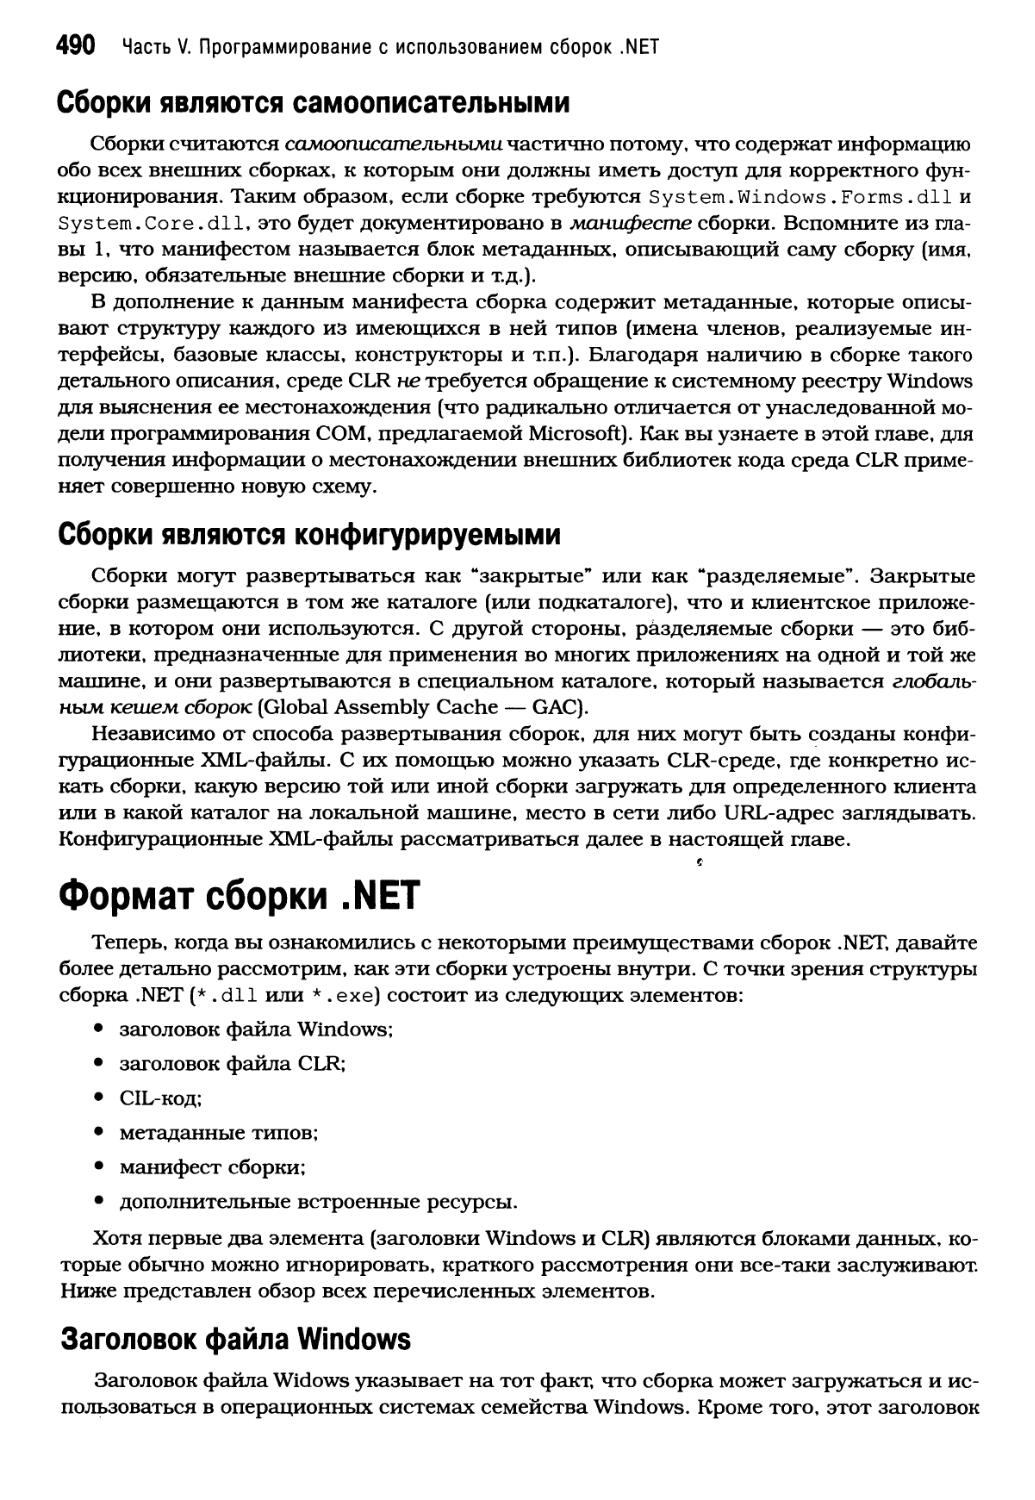 Формат сборки .NET